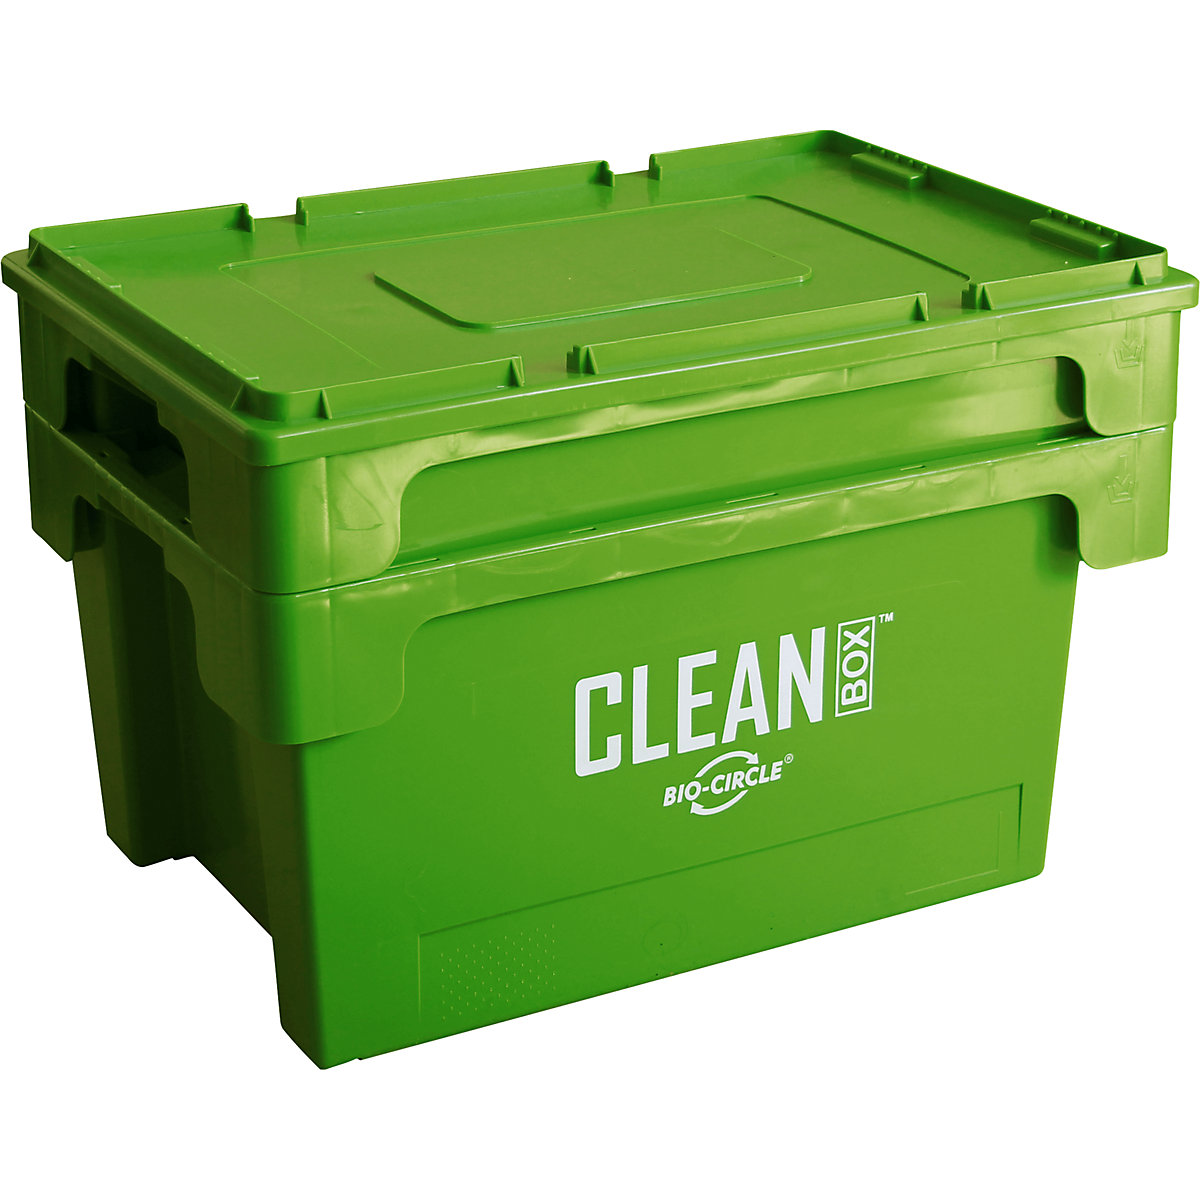 Dispozitiv pentru curățarea pieselor mici CLEAN BOX – Bio-Circle